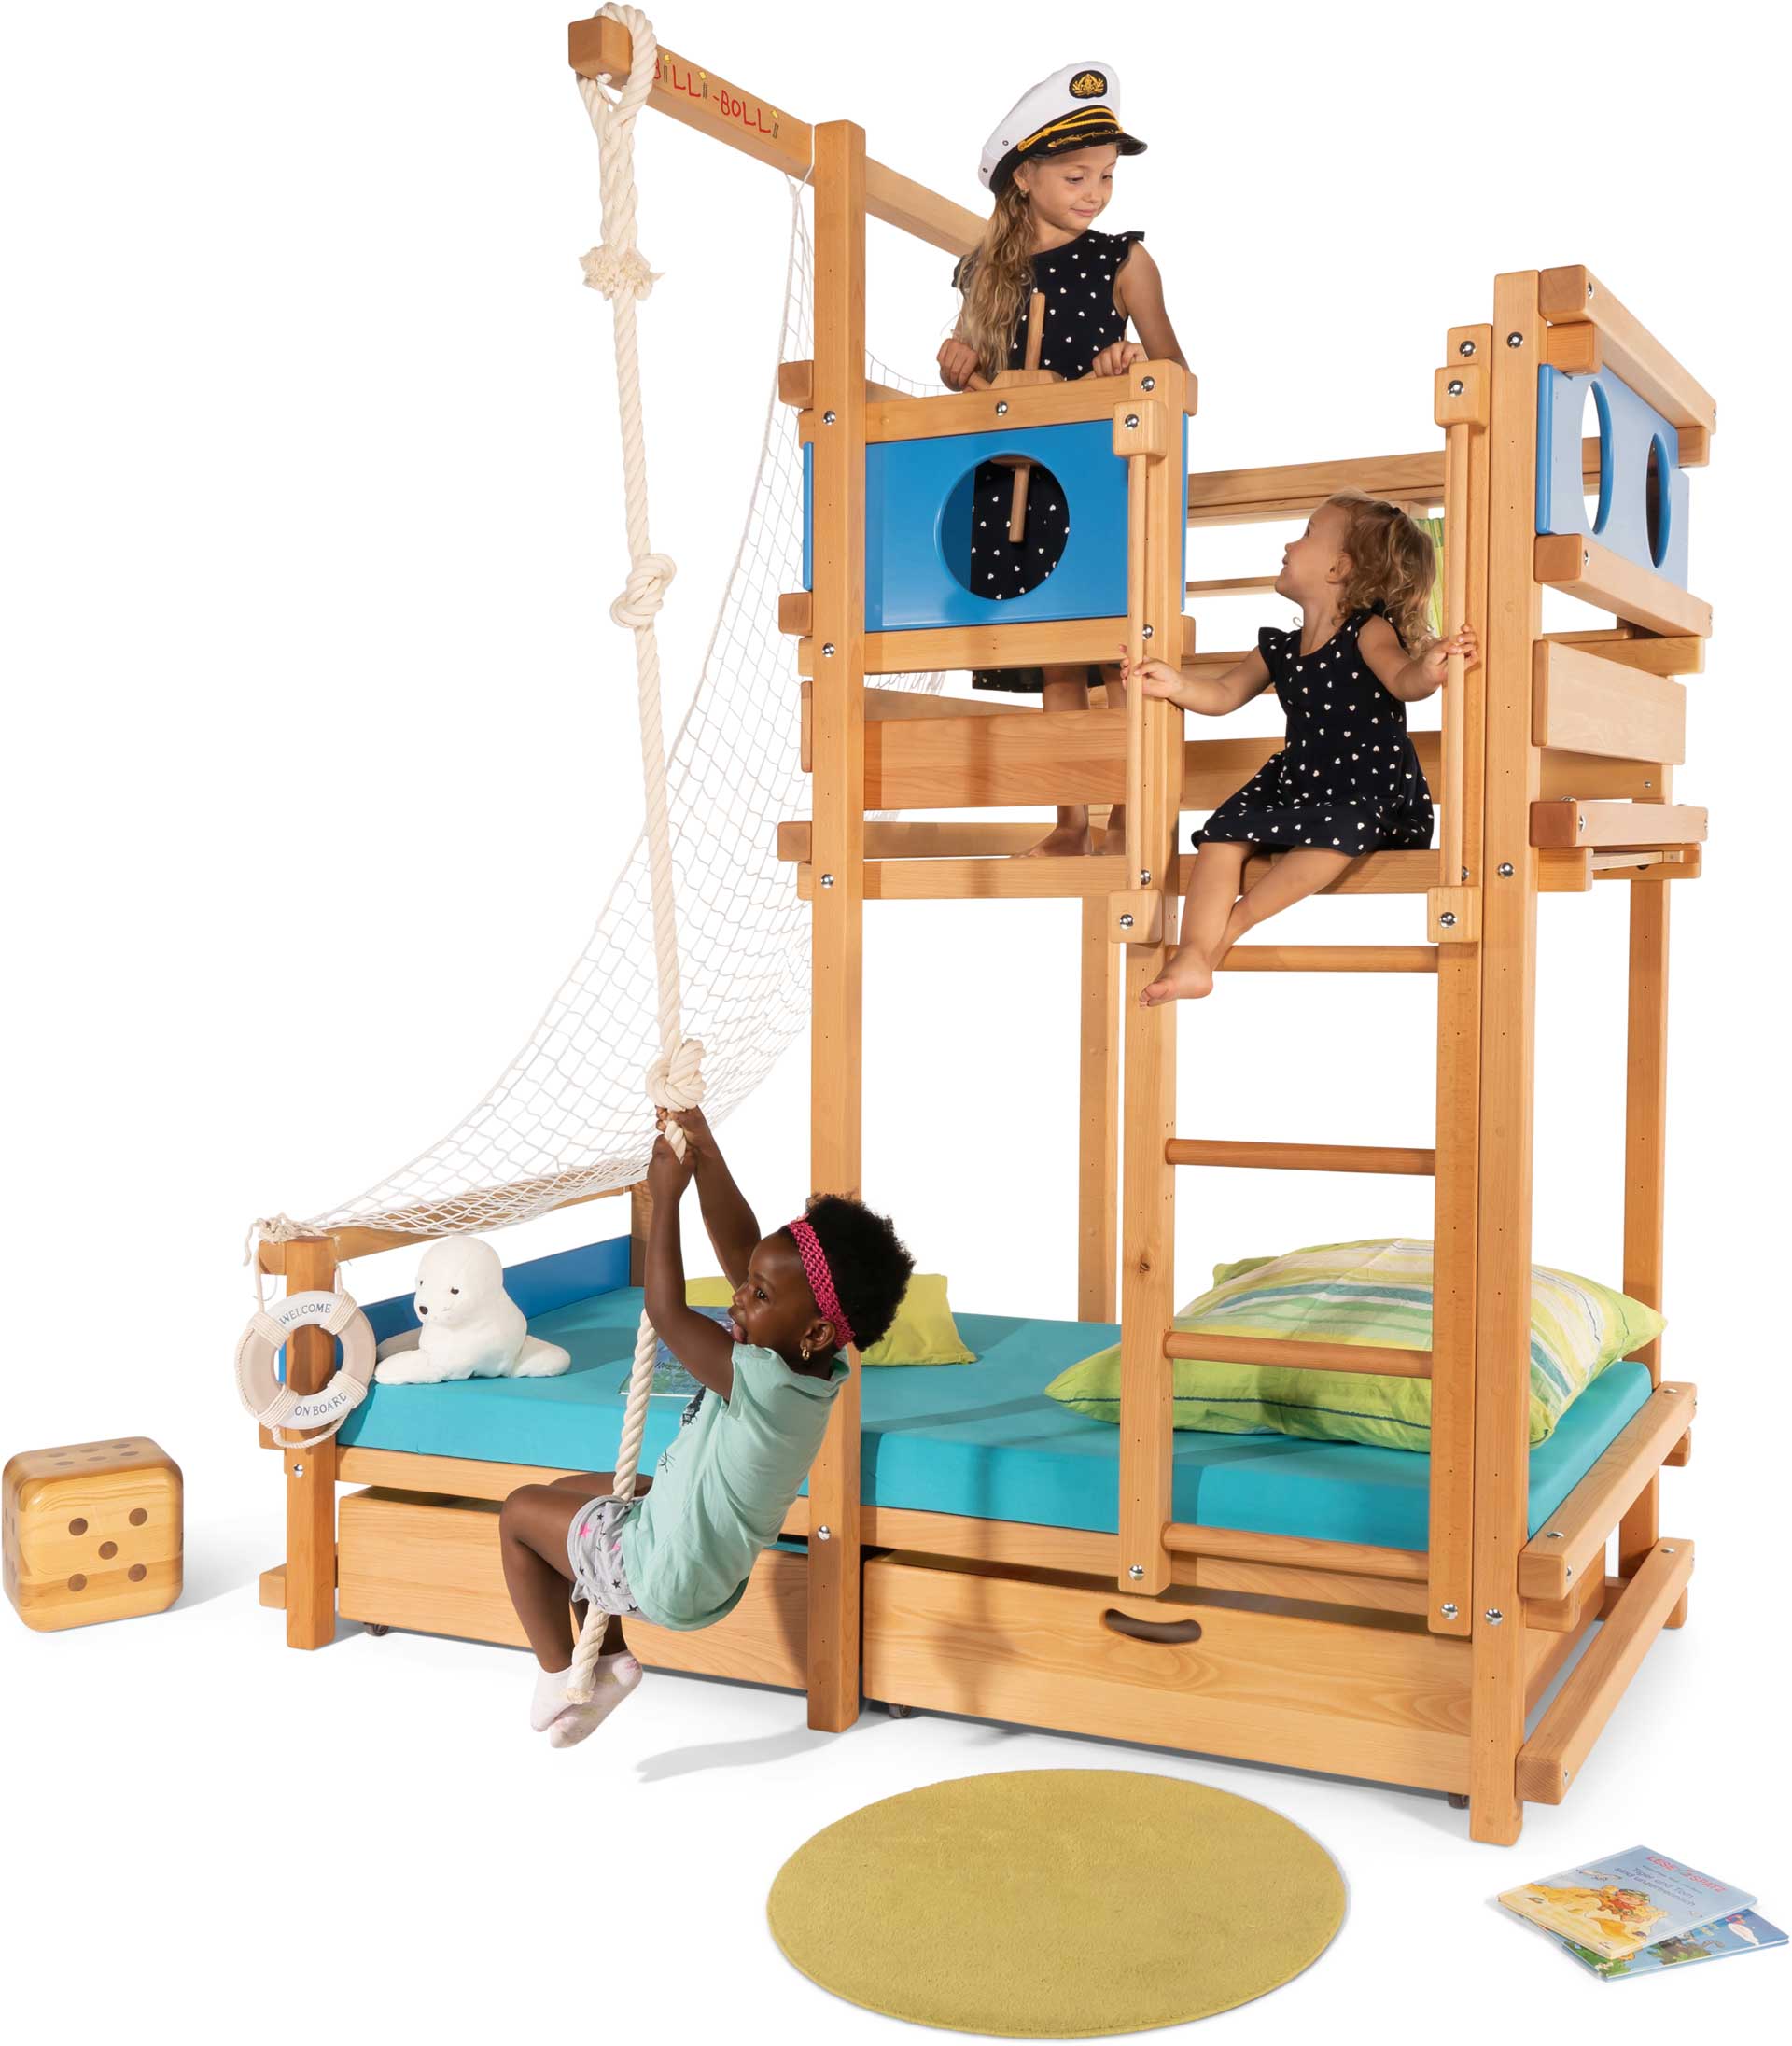 Dachschrägen­bett: Das geniale Kinder-Spielbett für die Dachschräge (Kinderbetten)